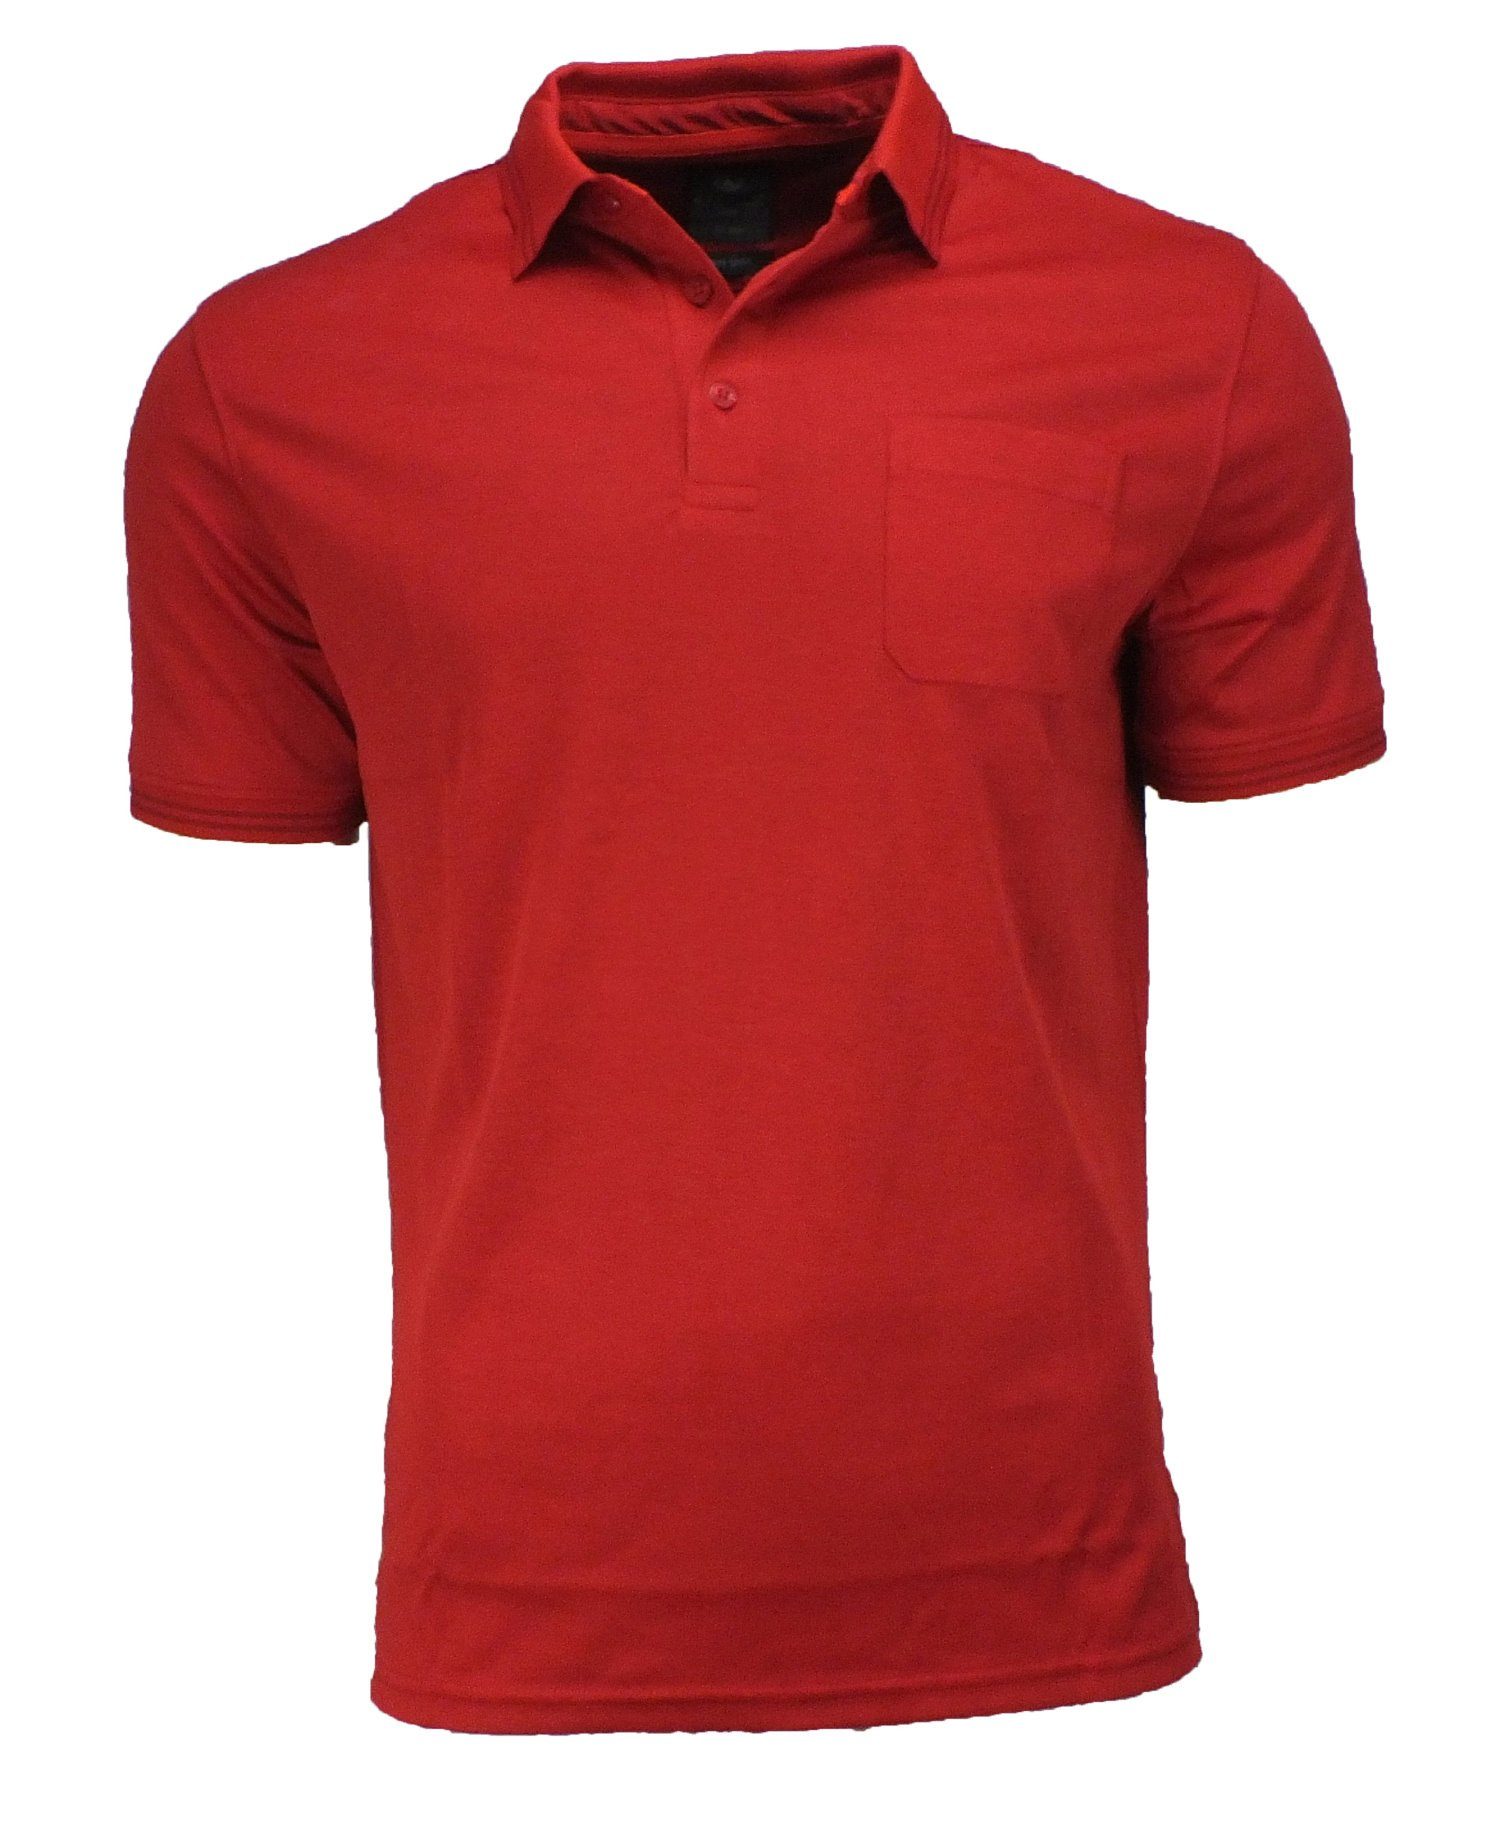 Kitaro Poloshirt Kitaro Herren Poloshirt auch in großen Größen rot